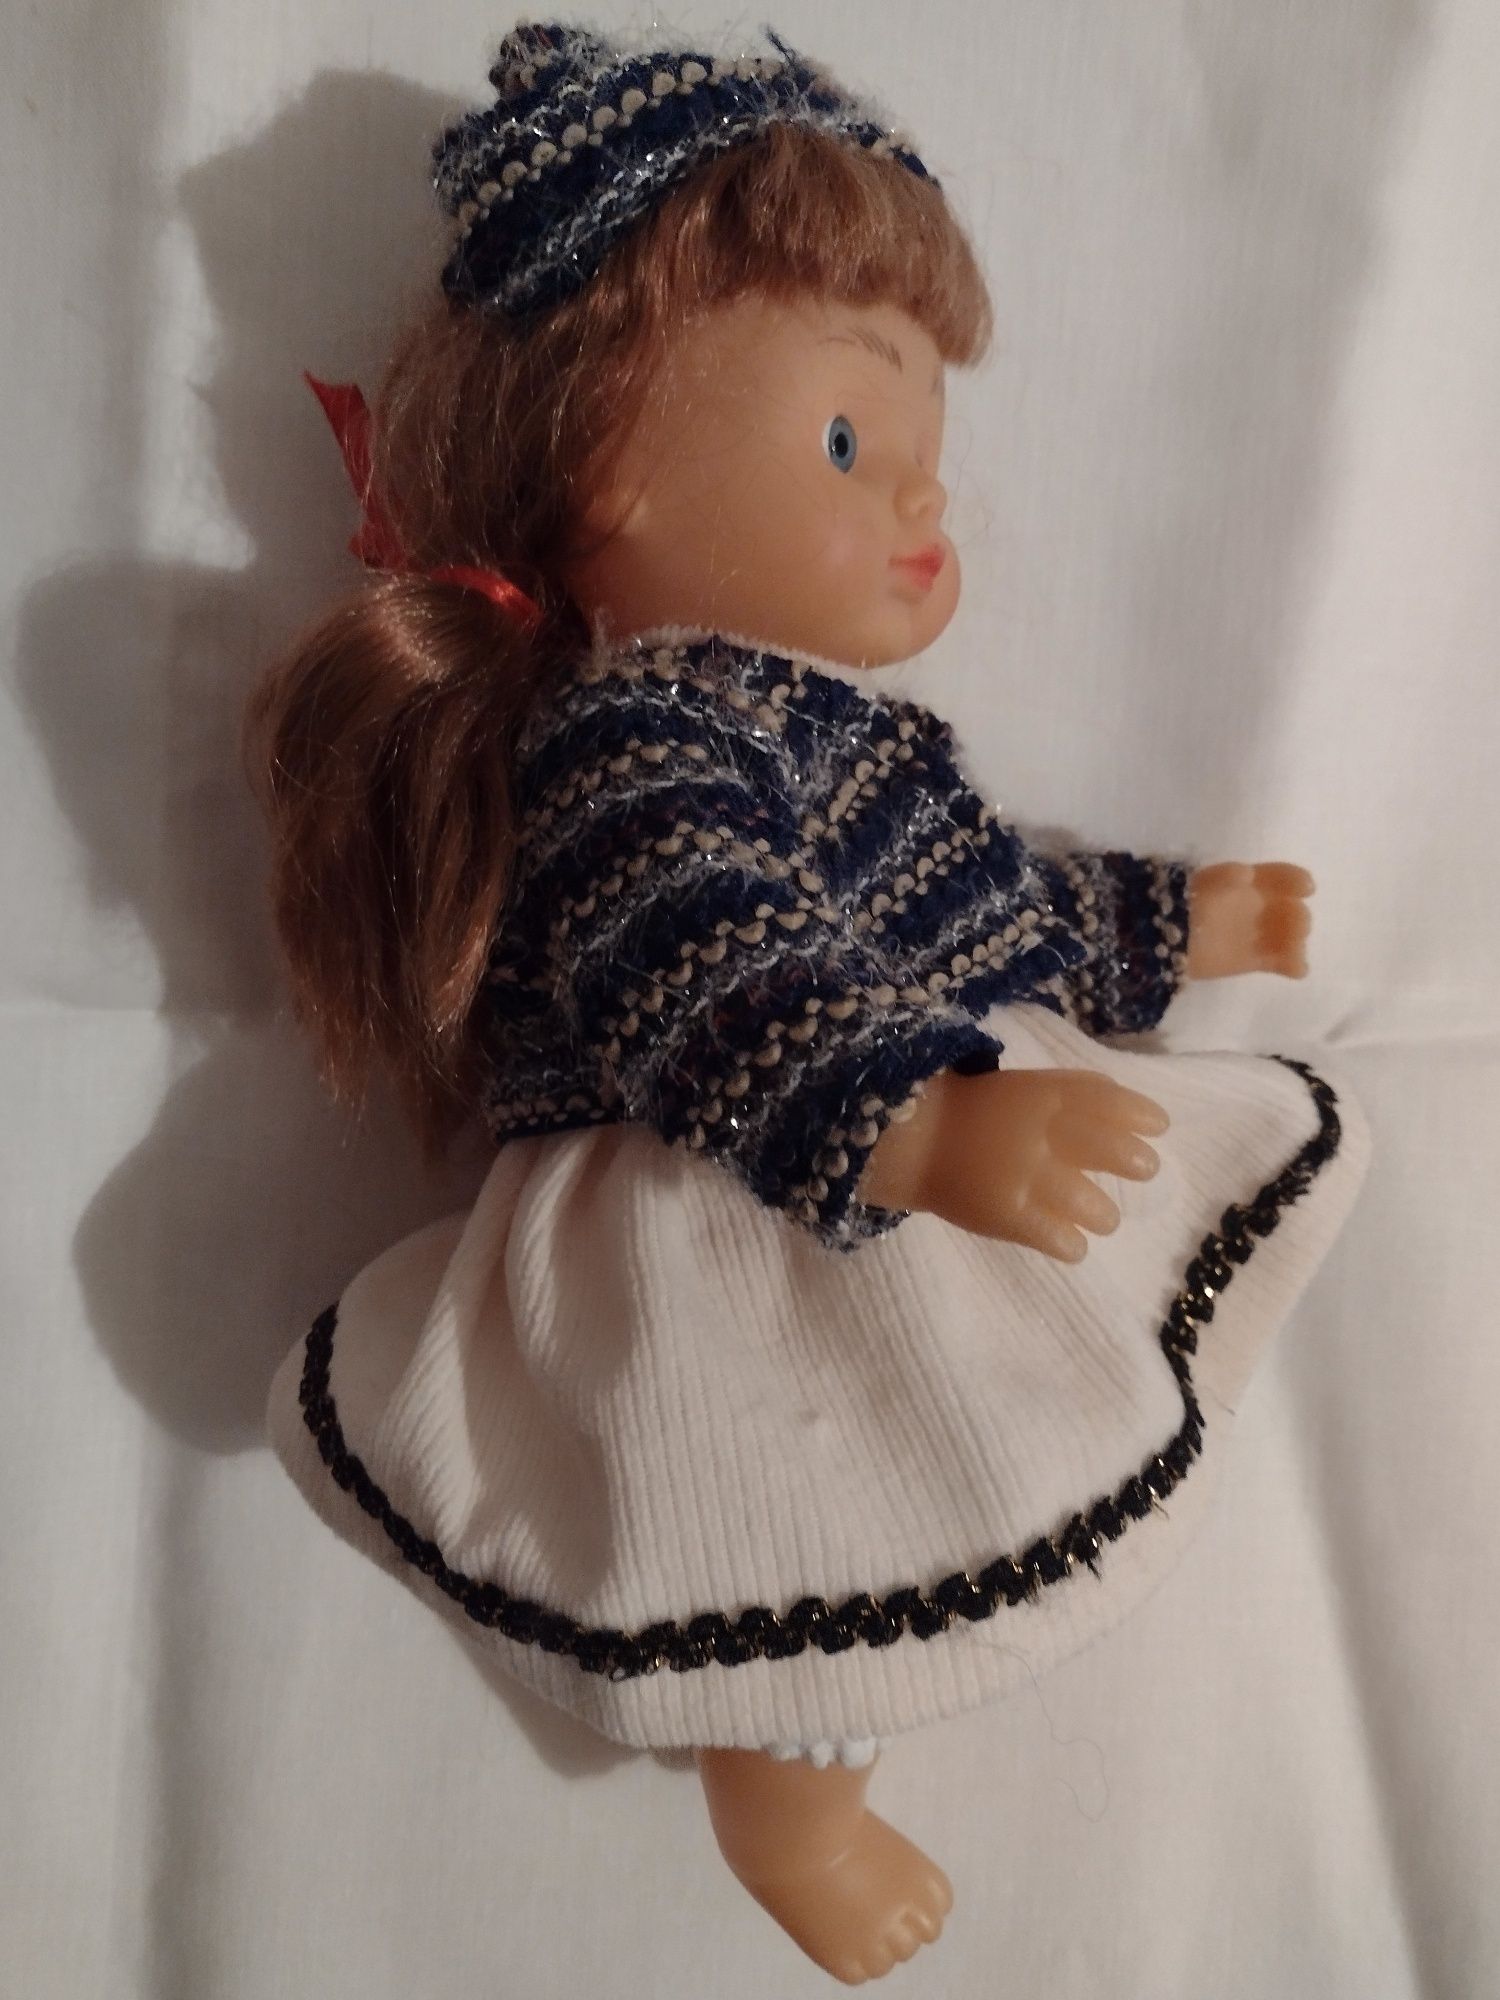 Kolekcjonerska lalka radziecka. #vintage lata 80-te